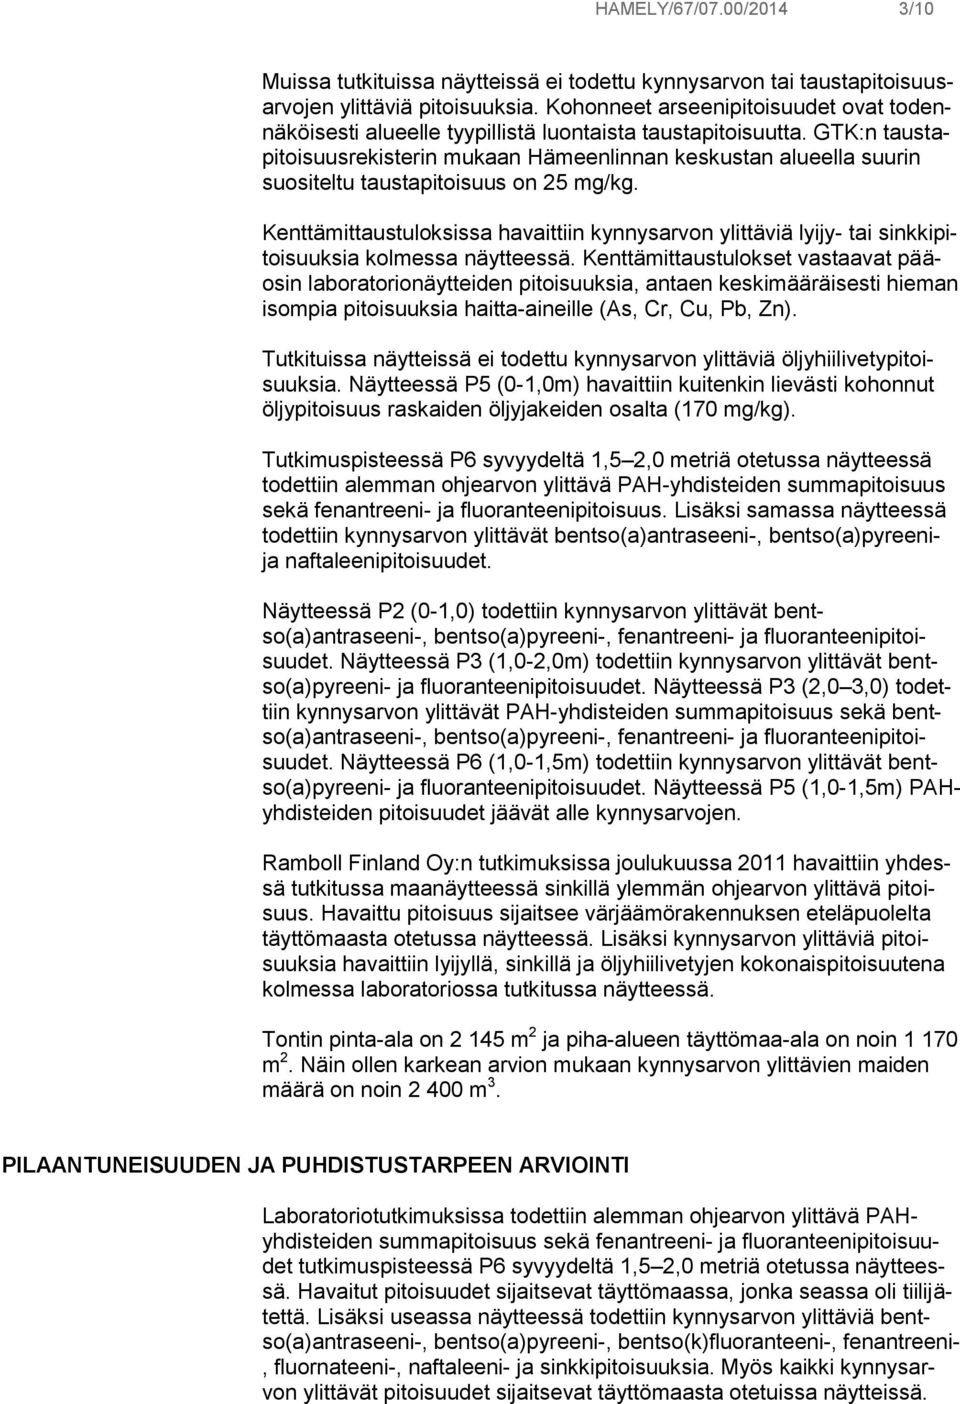 GTK:n taustapitoisuusrekisterin mukaan Hämeenlinnan keskustan alueella suurin suositeltu taustapitoisuus on 25 mg/kg.